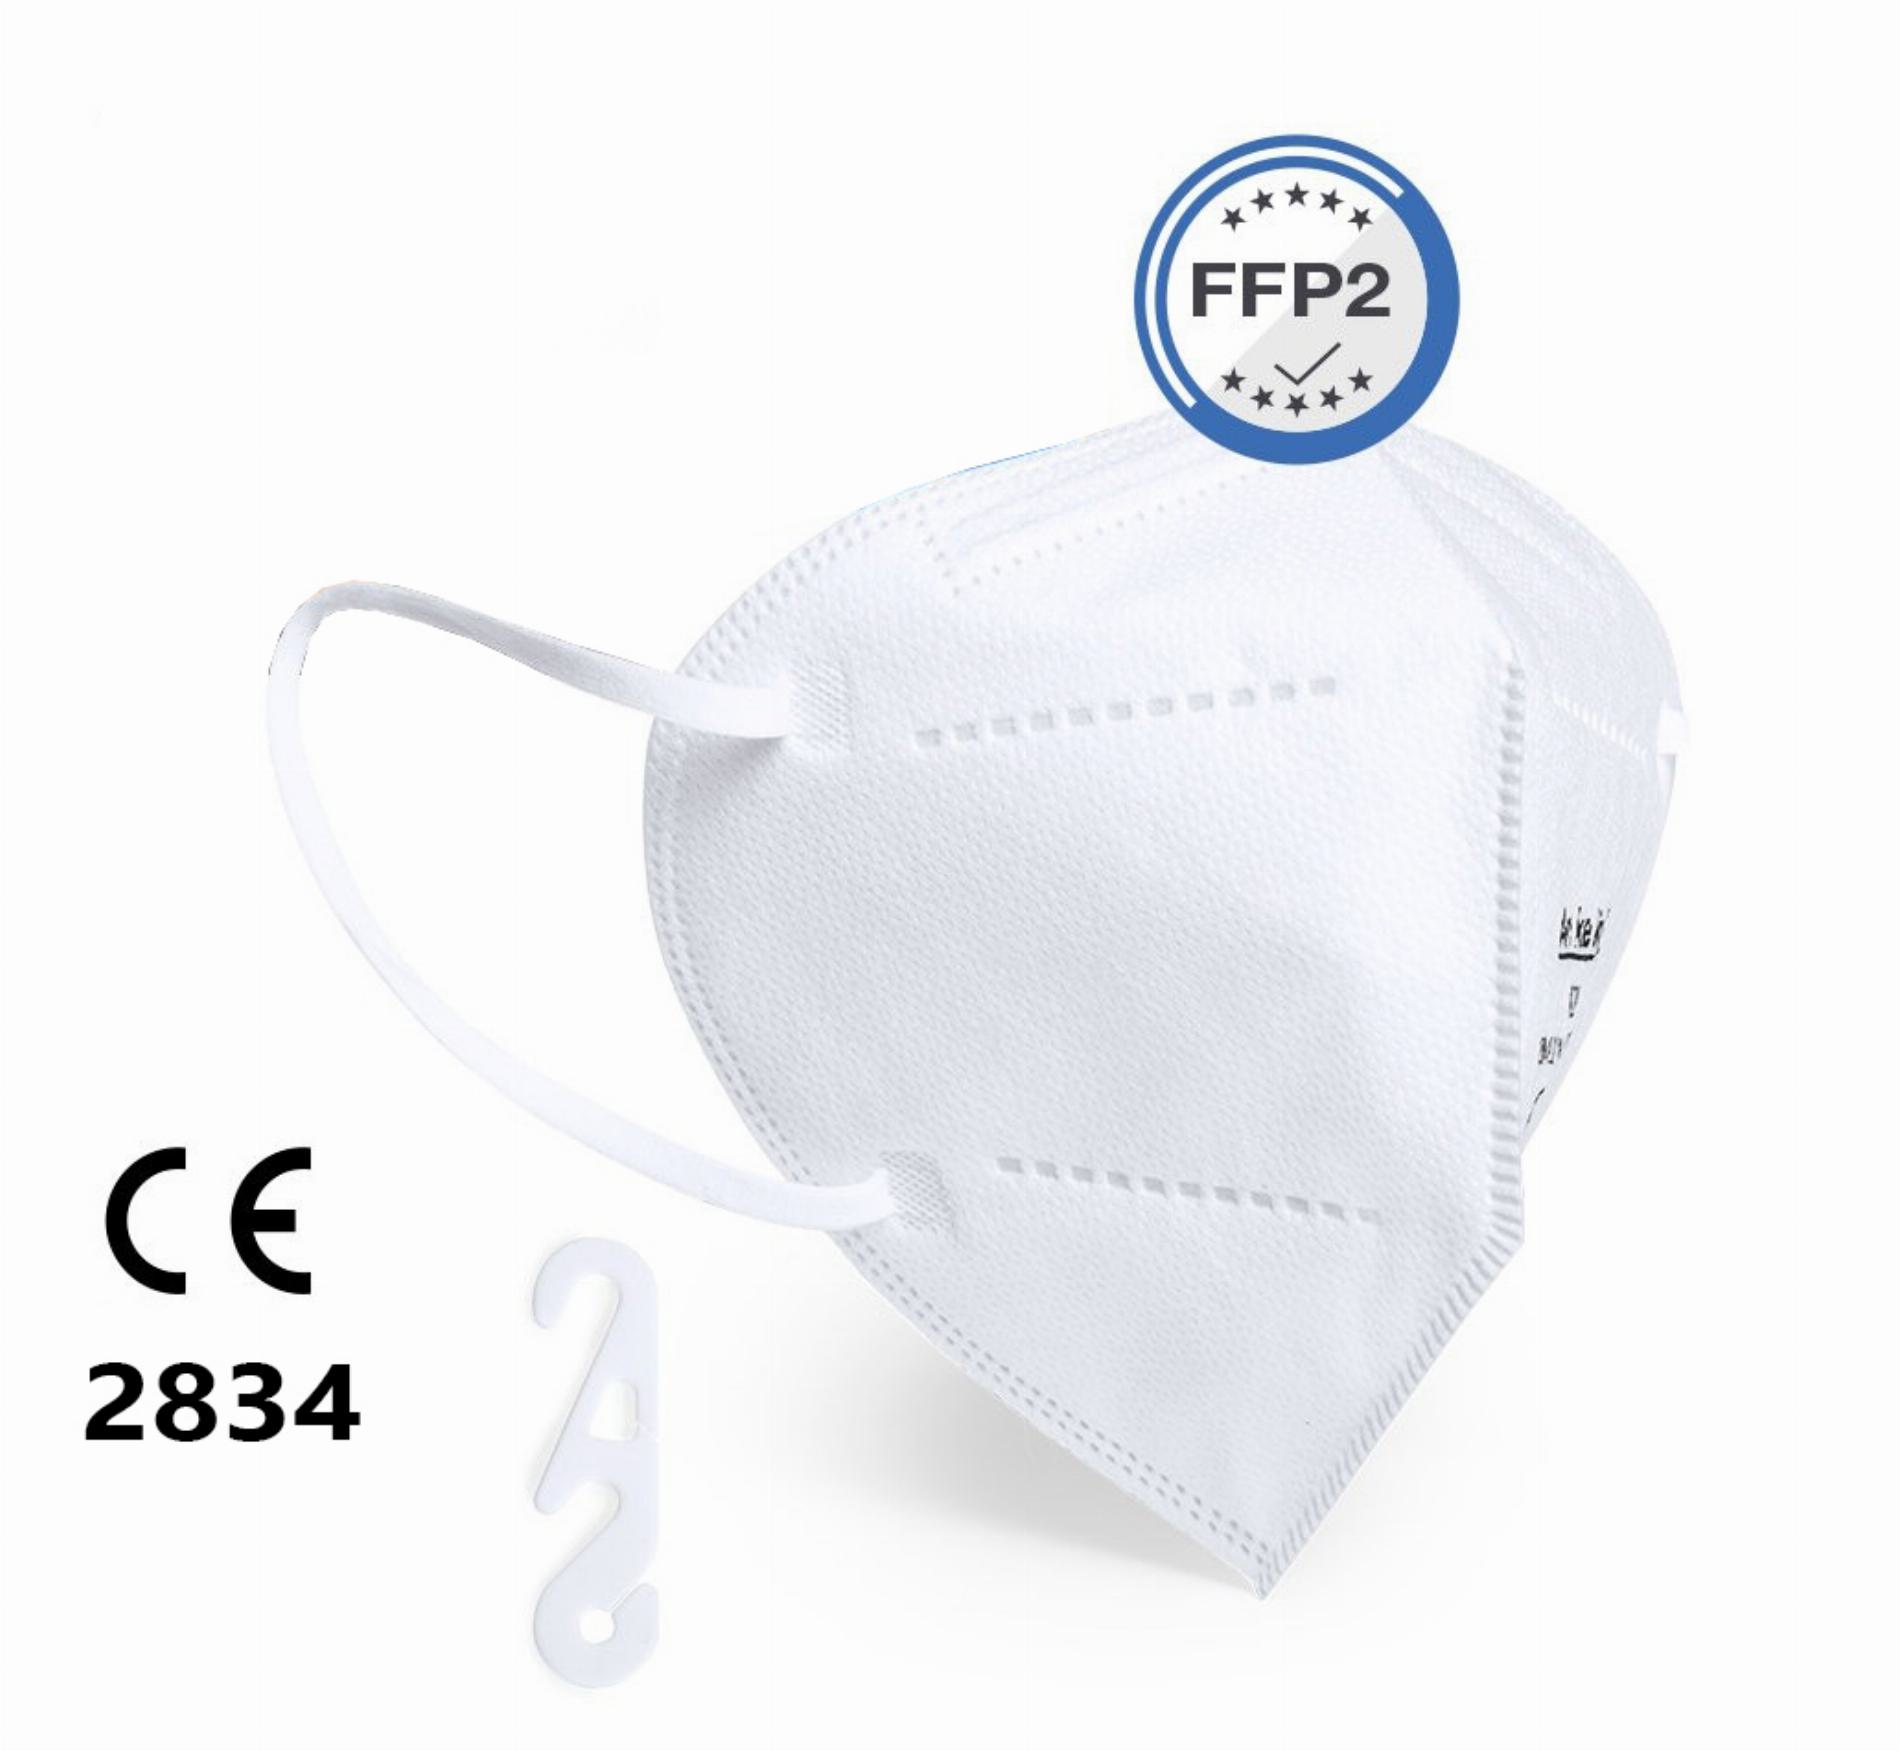 10 x FFP2 Maske faltbar, mit Gummizügen (ISO CE 2834)